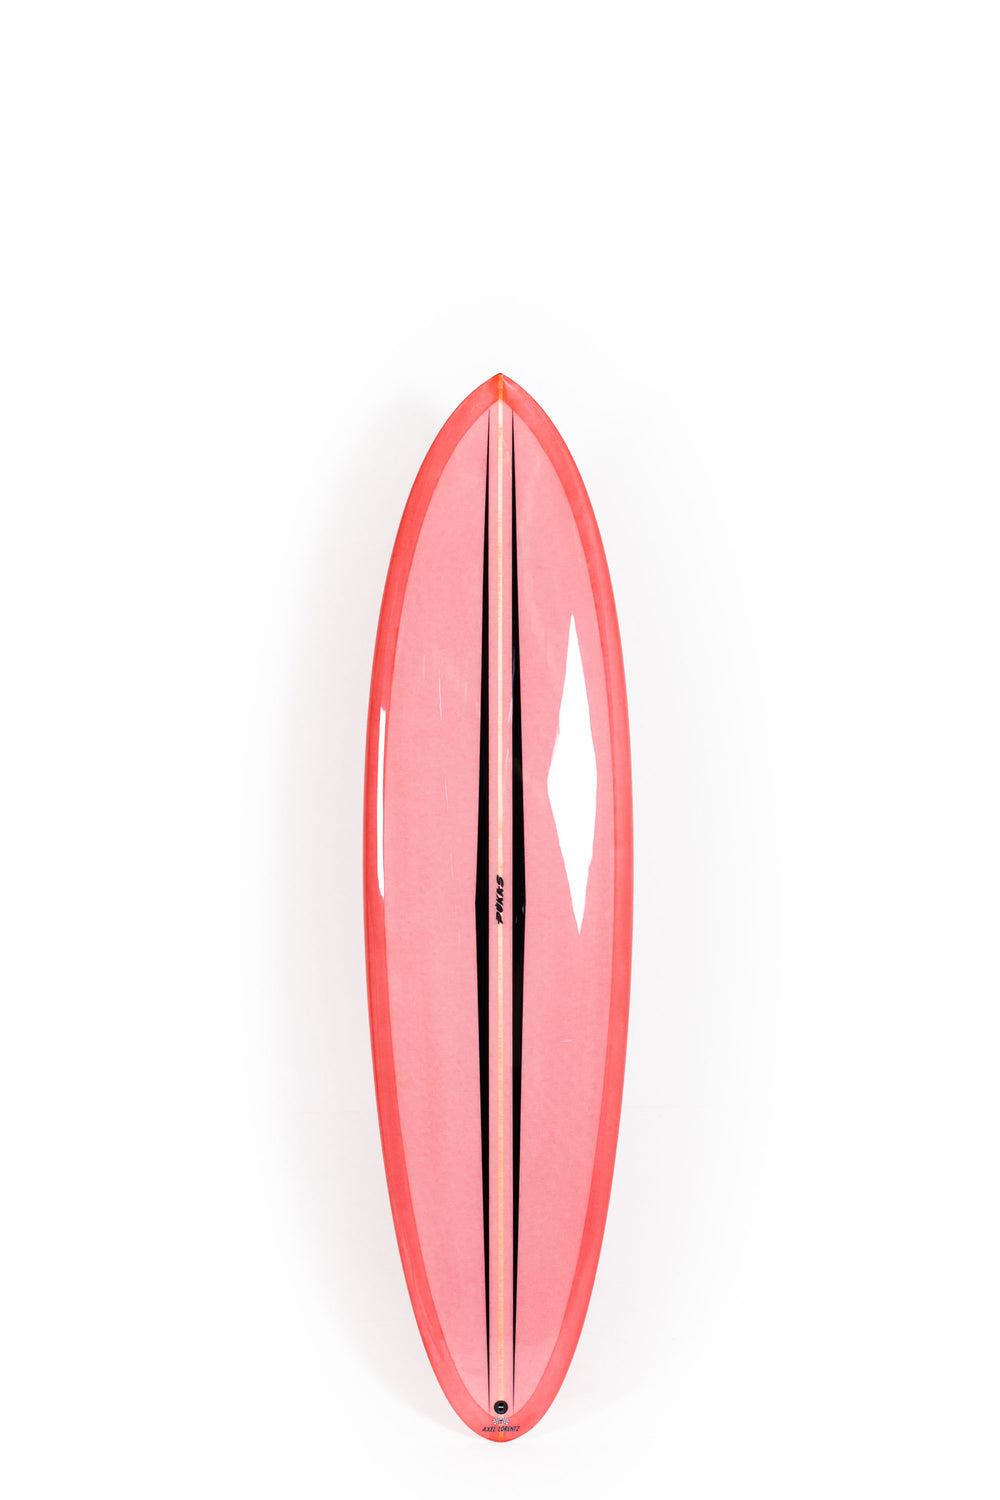 Pukas Surf Shop - Pukas Surfboard - LA CÔTE by Axel Lorentz - 6´11